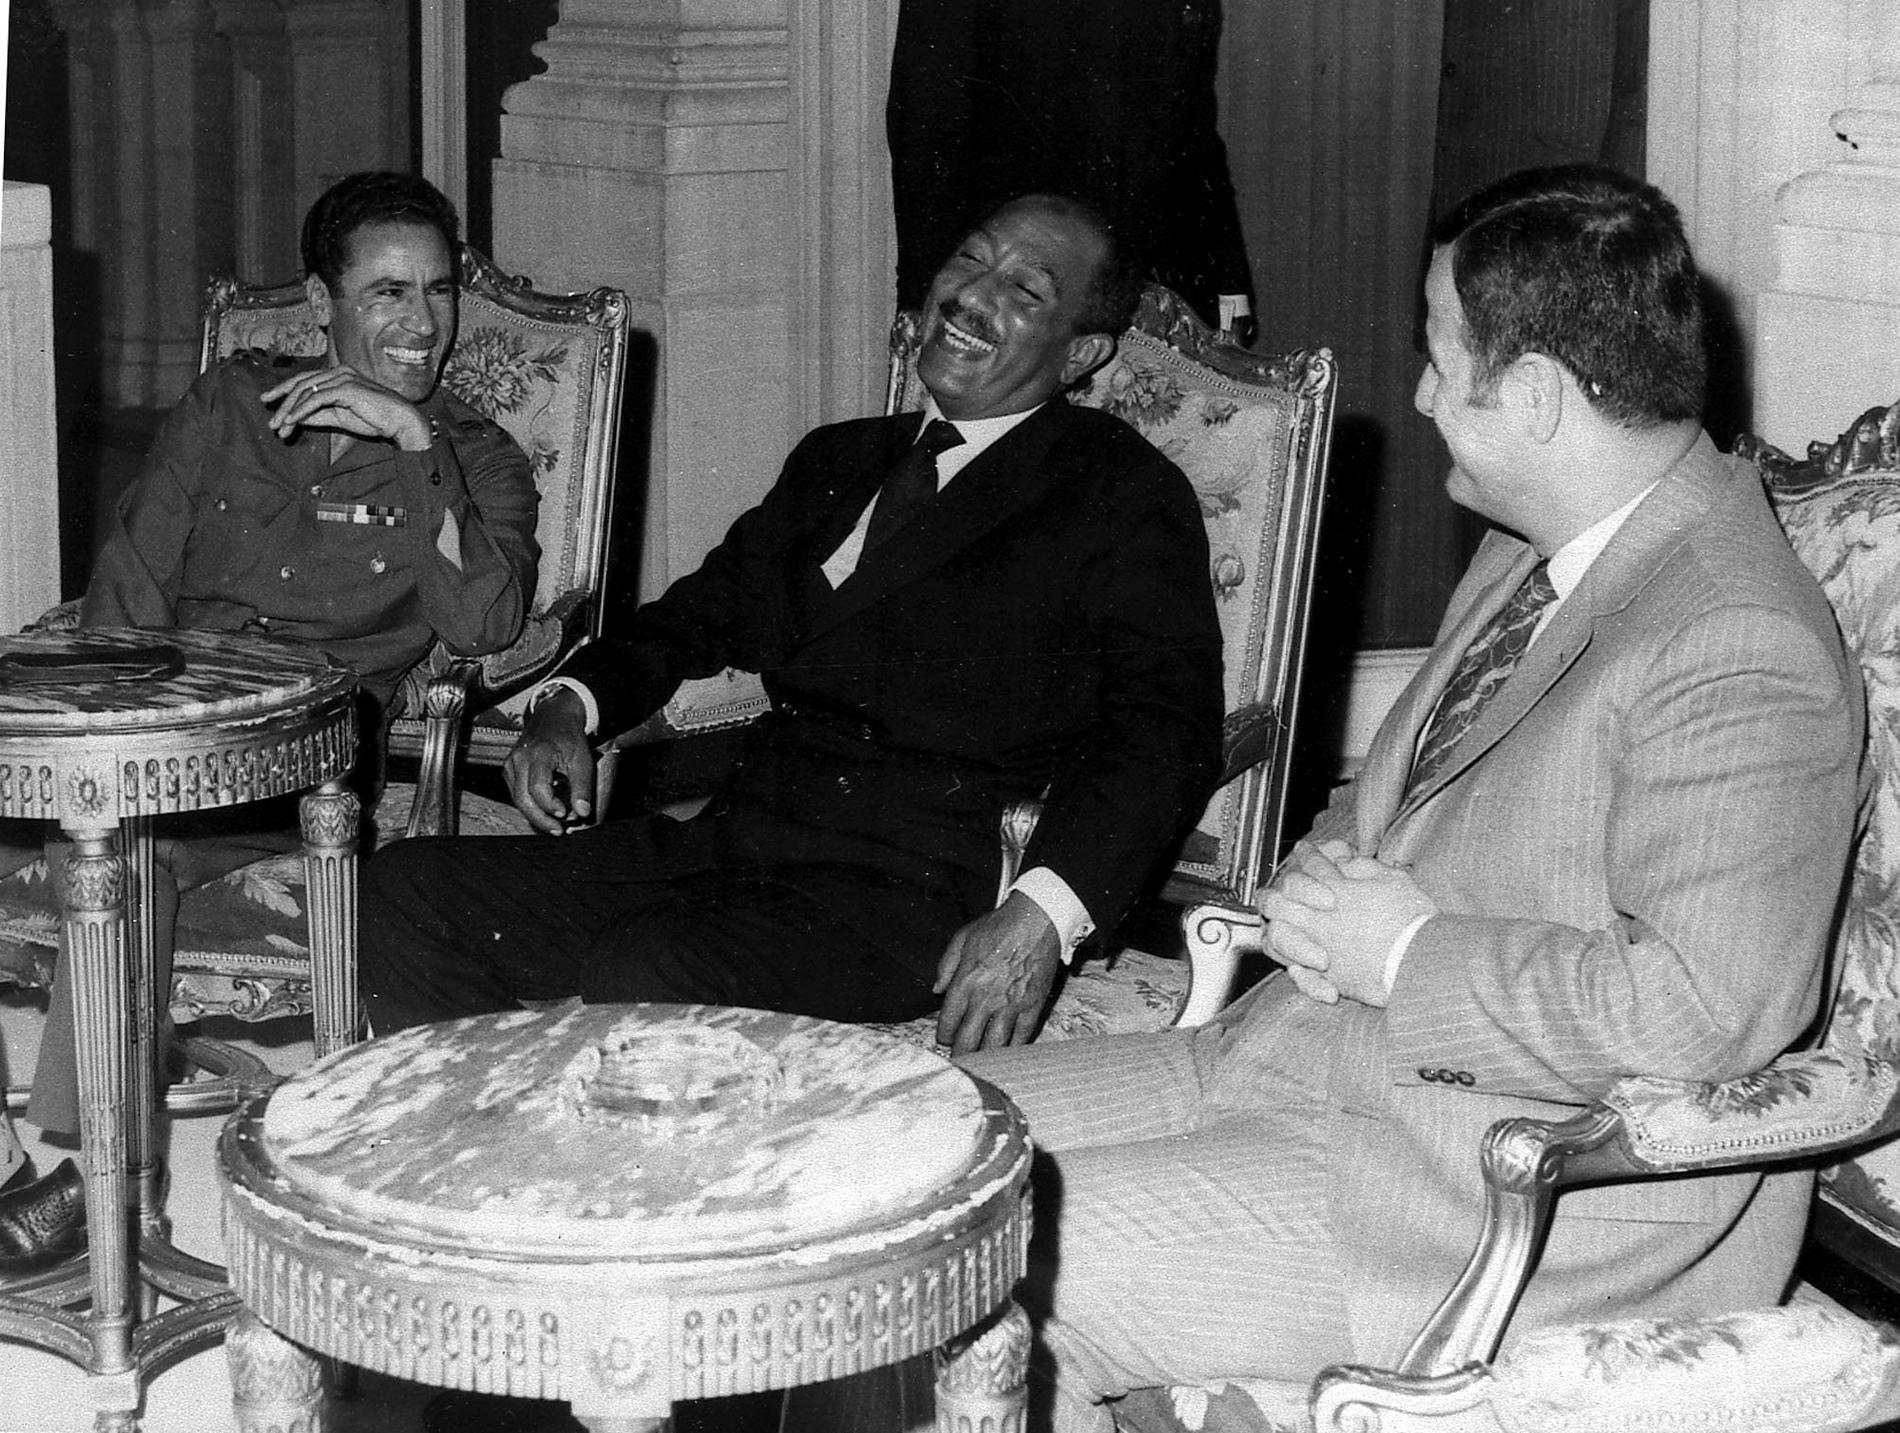 1972 togs den här bilden inifrån Kubbhepalatset i Kairo på Muammar Gaddafi tillsammans med Egyptens dåvarande president Anwar Sadat och Hafez Al-Assad ”Lejonet av Damaskus”, då president för Syrien. Trion samtalar som situationen i Mellanöstern.